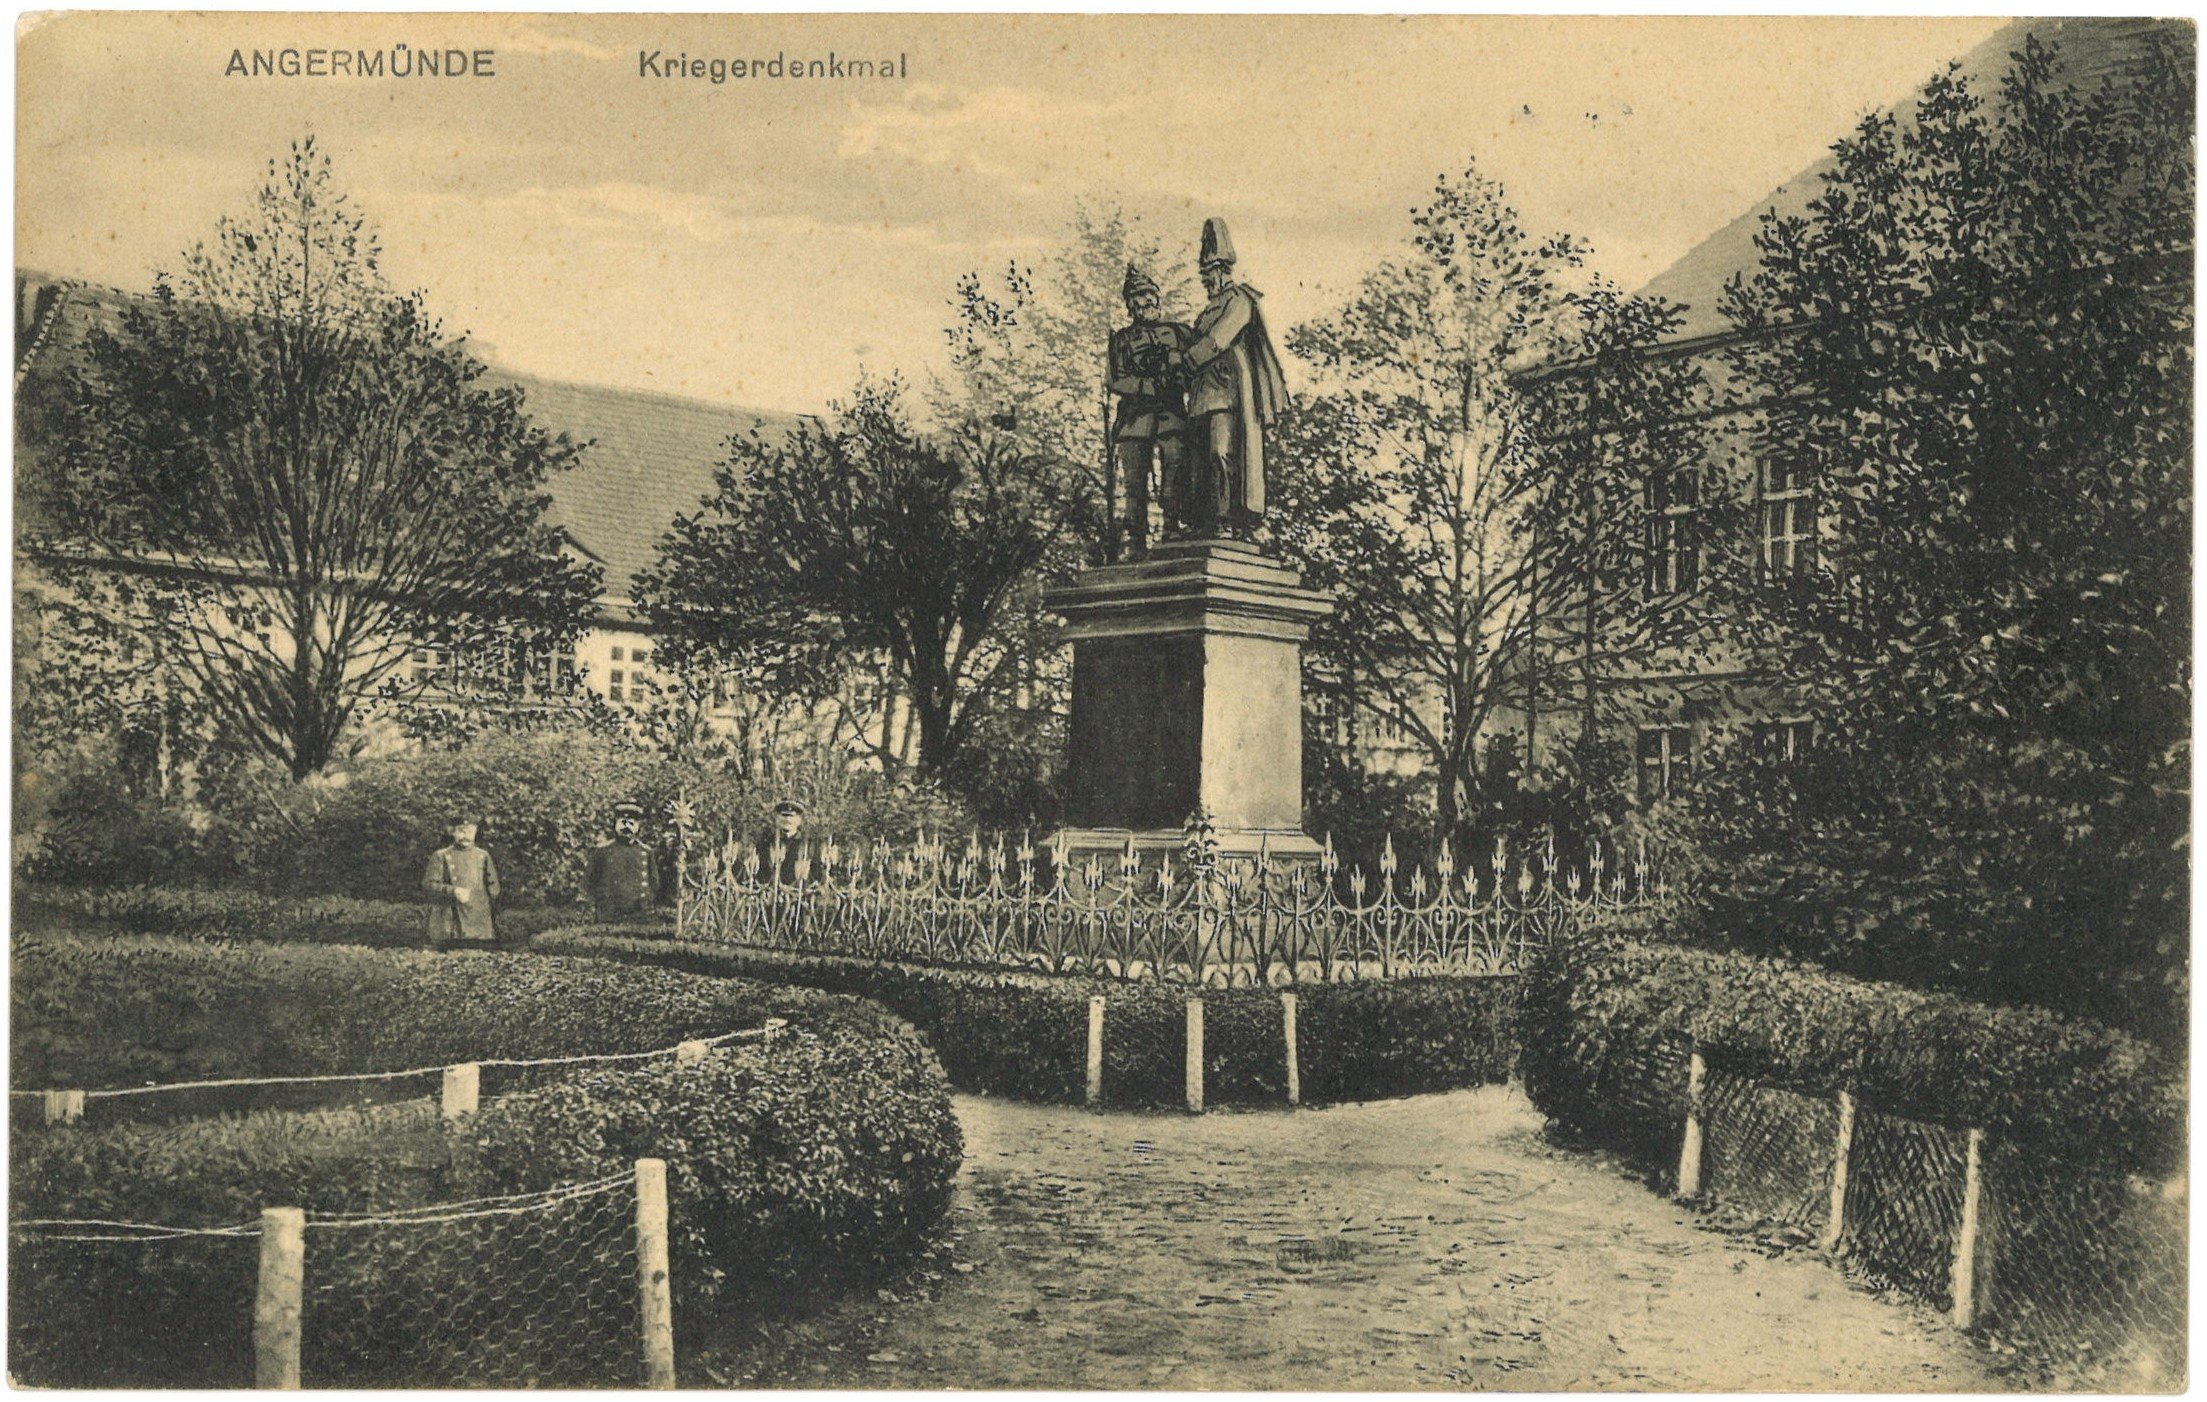 Angermünde: Kriegerdenkmal (Landesgeschichtliche Vereinigung für die Mark Brandenburg e.V. CC BY)